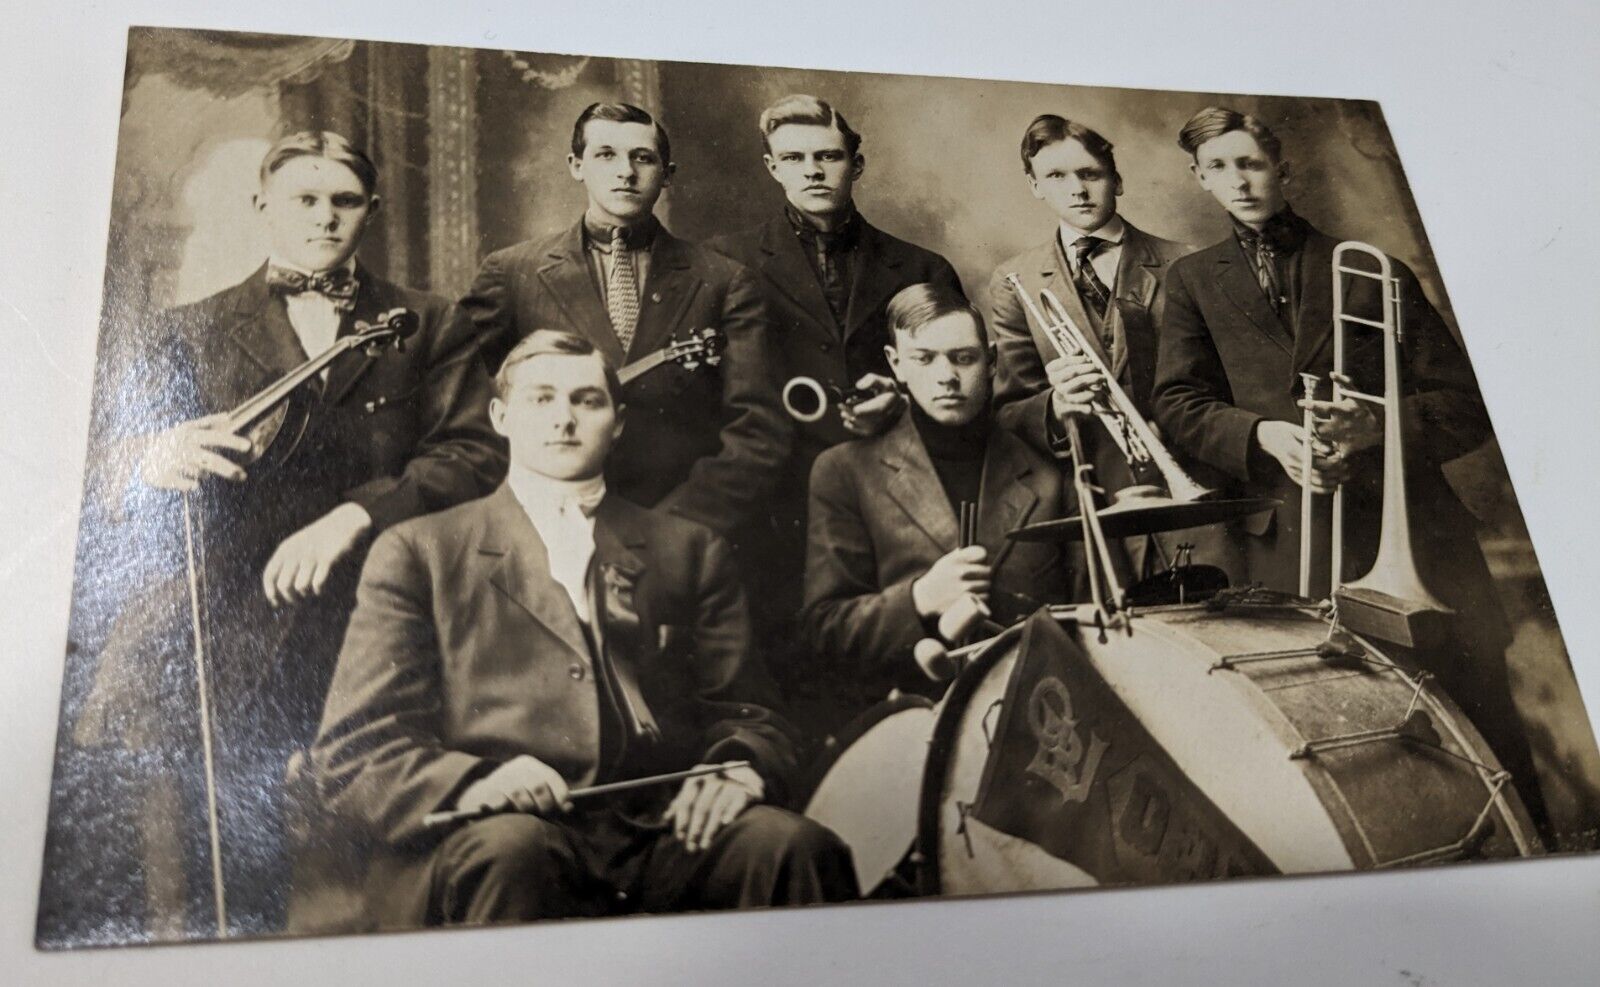 Vintage postcard of a band, unused